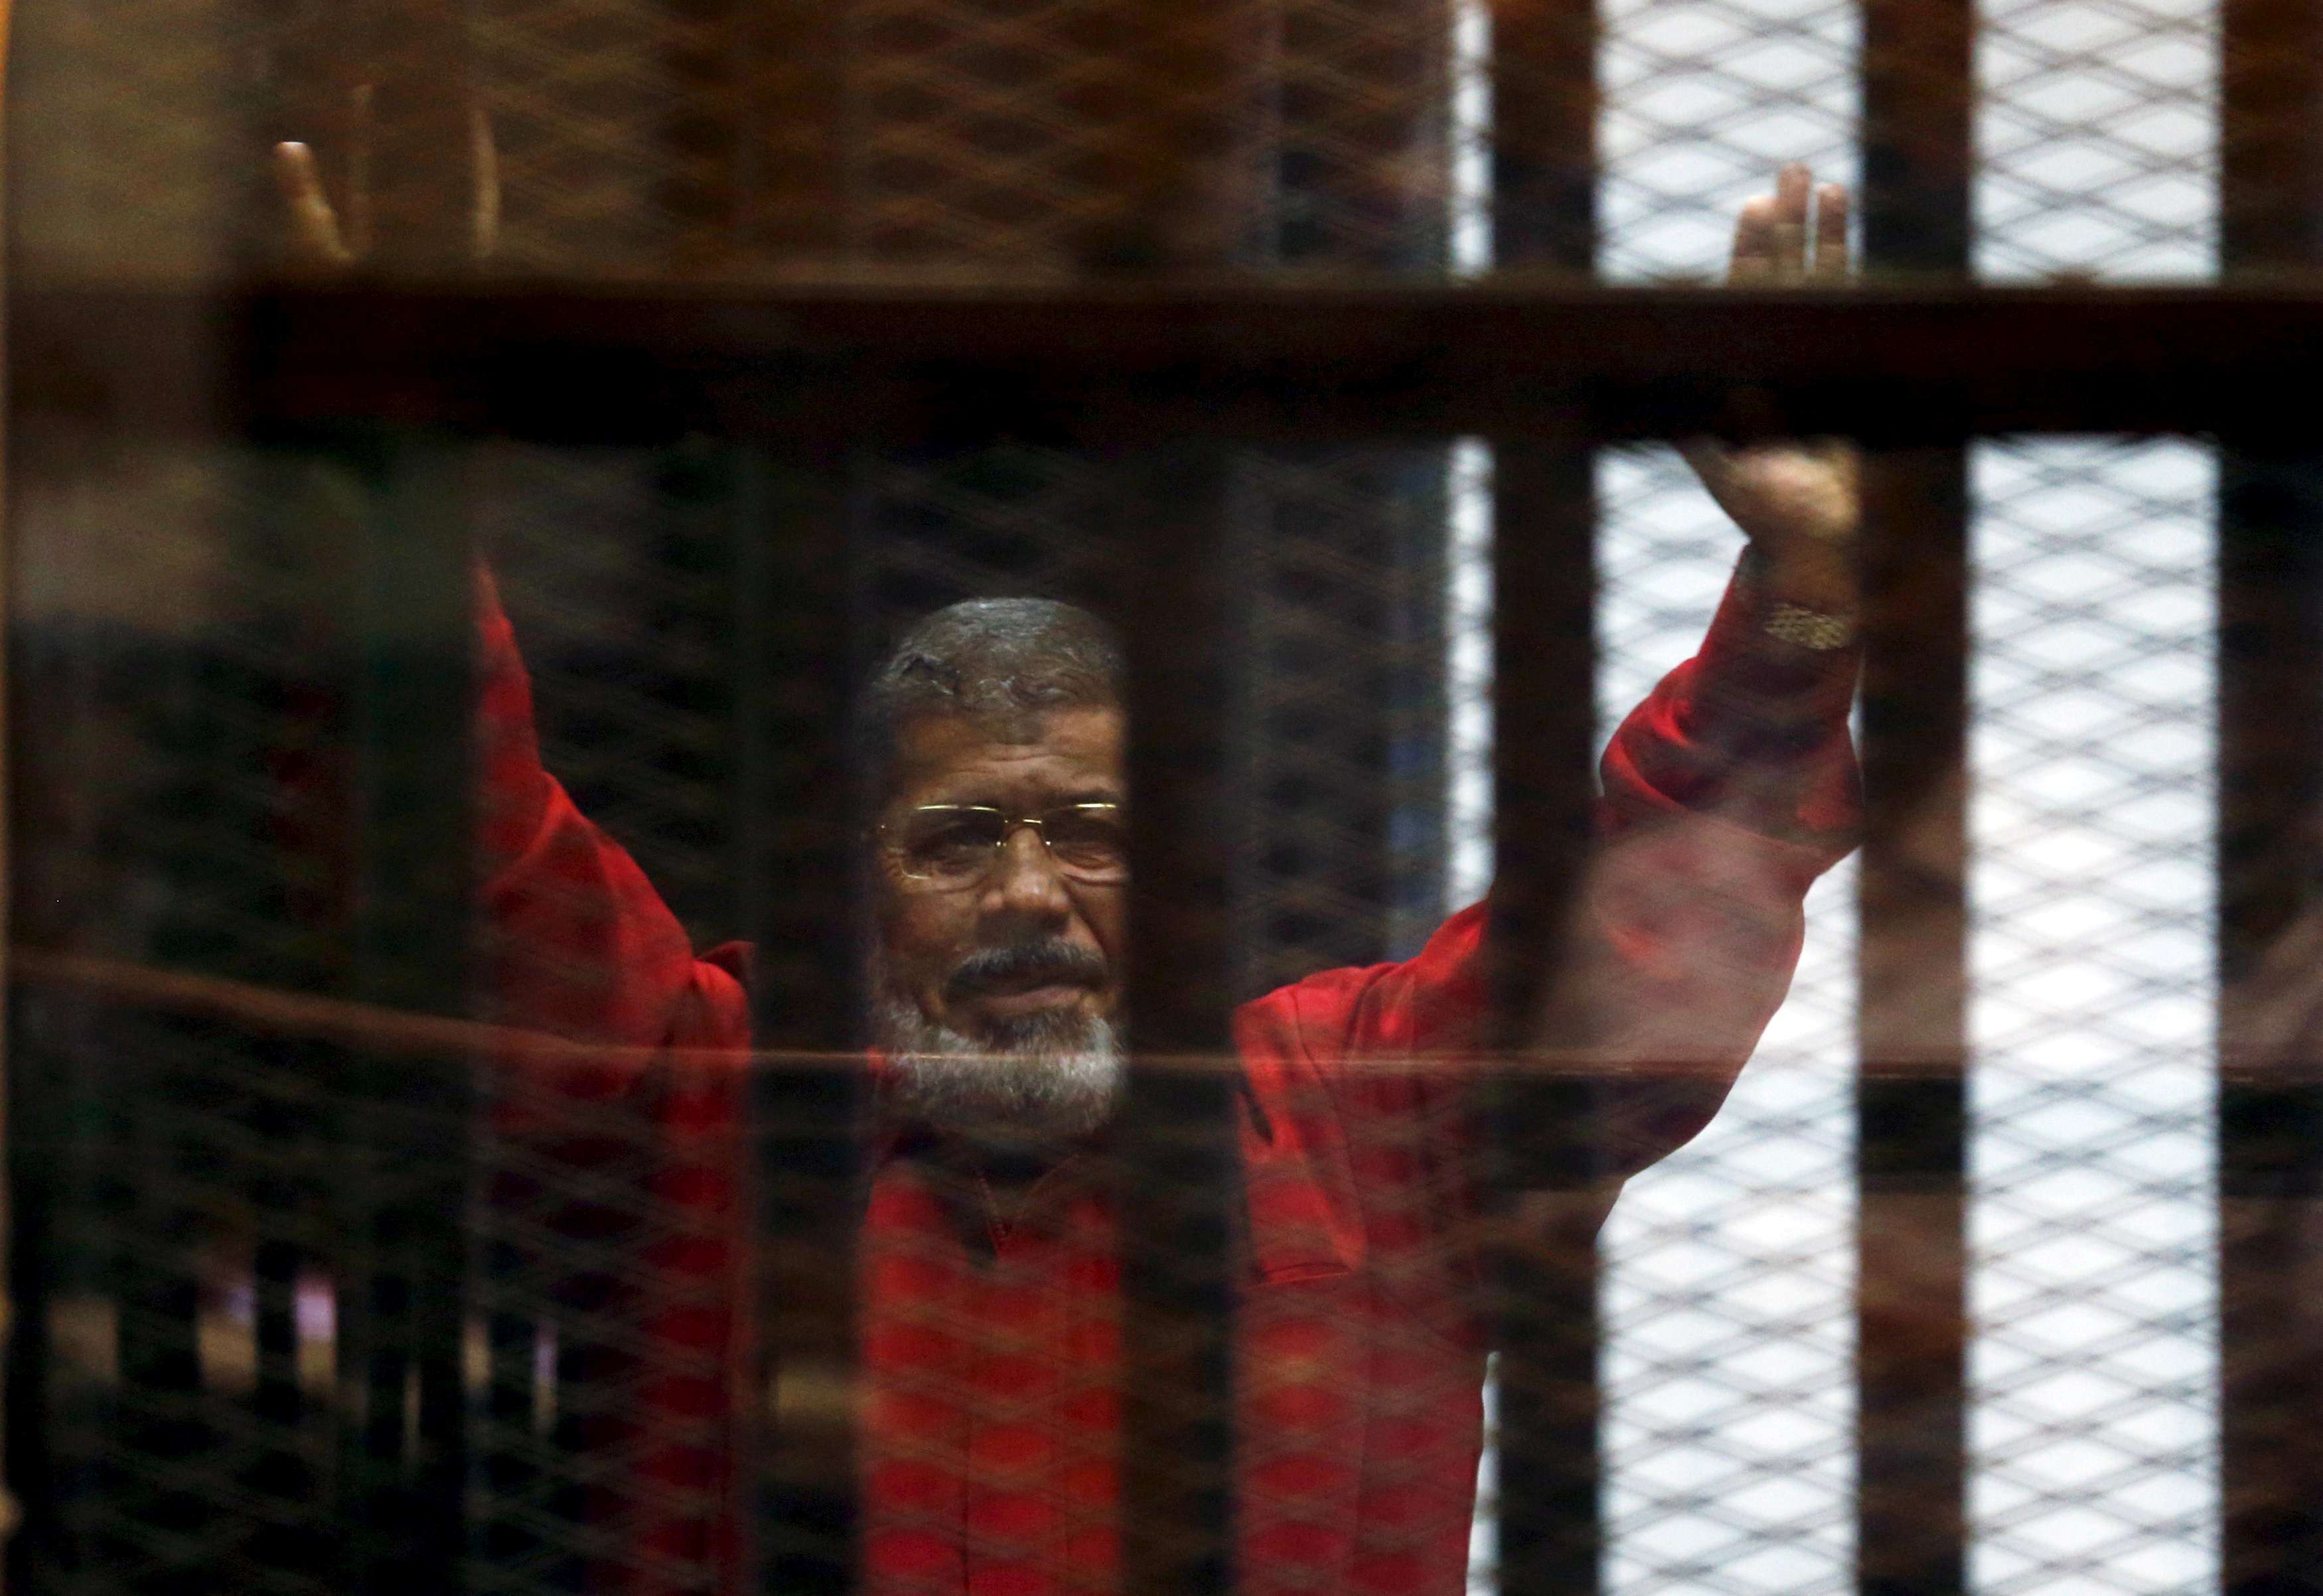 مرسي كان يتحدث الى القاضي قبل وفاته بوقت قصير